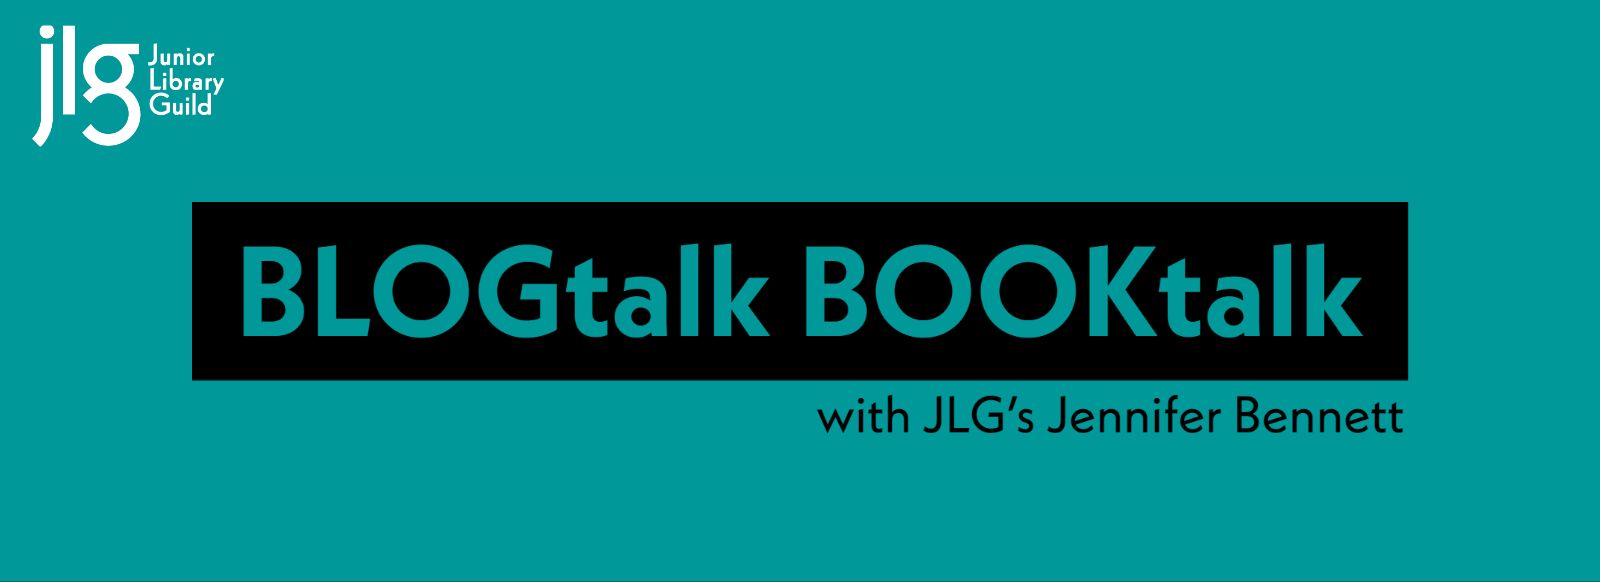 BLOGtalk BOOKtalk with Jennifer Bennett